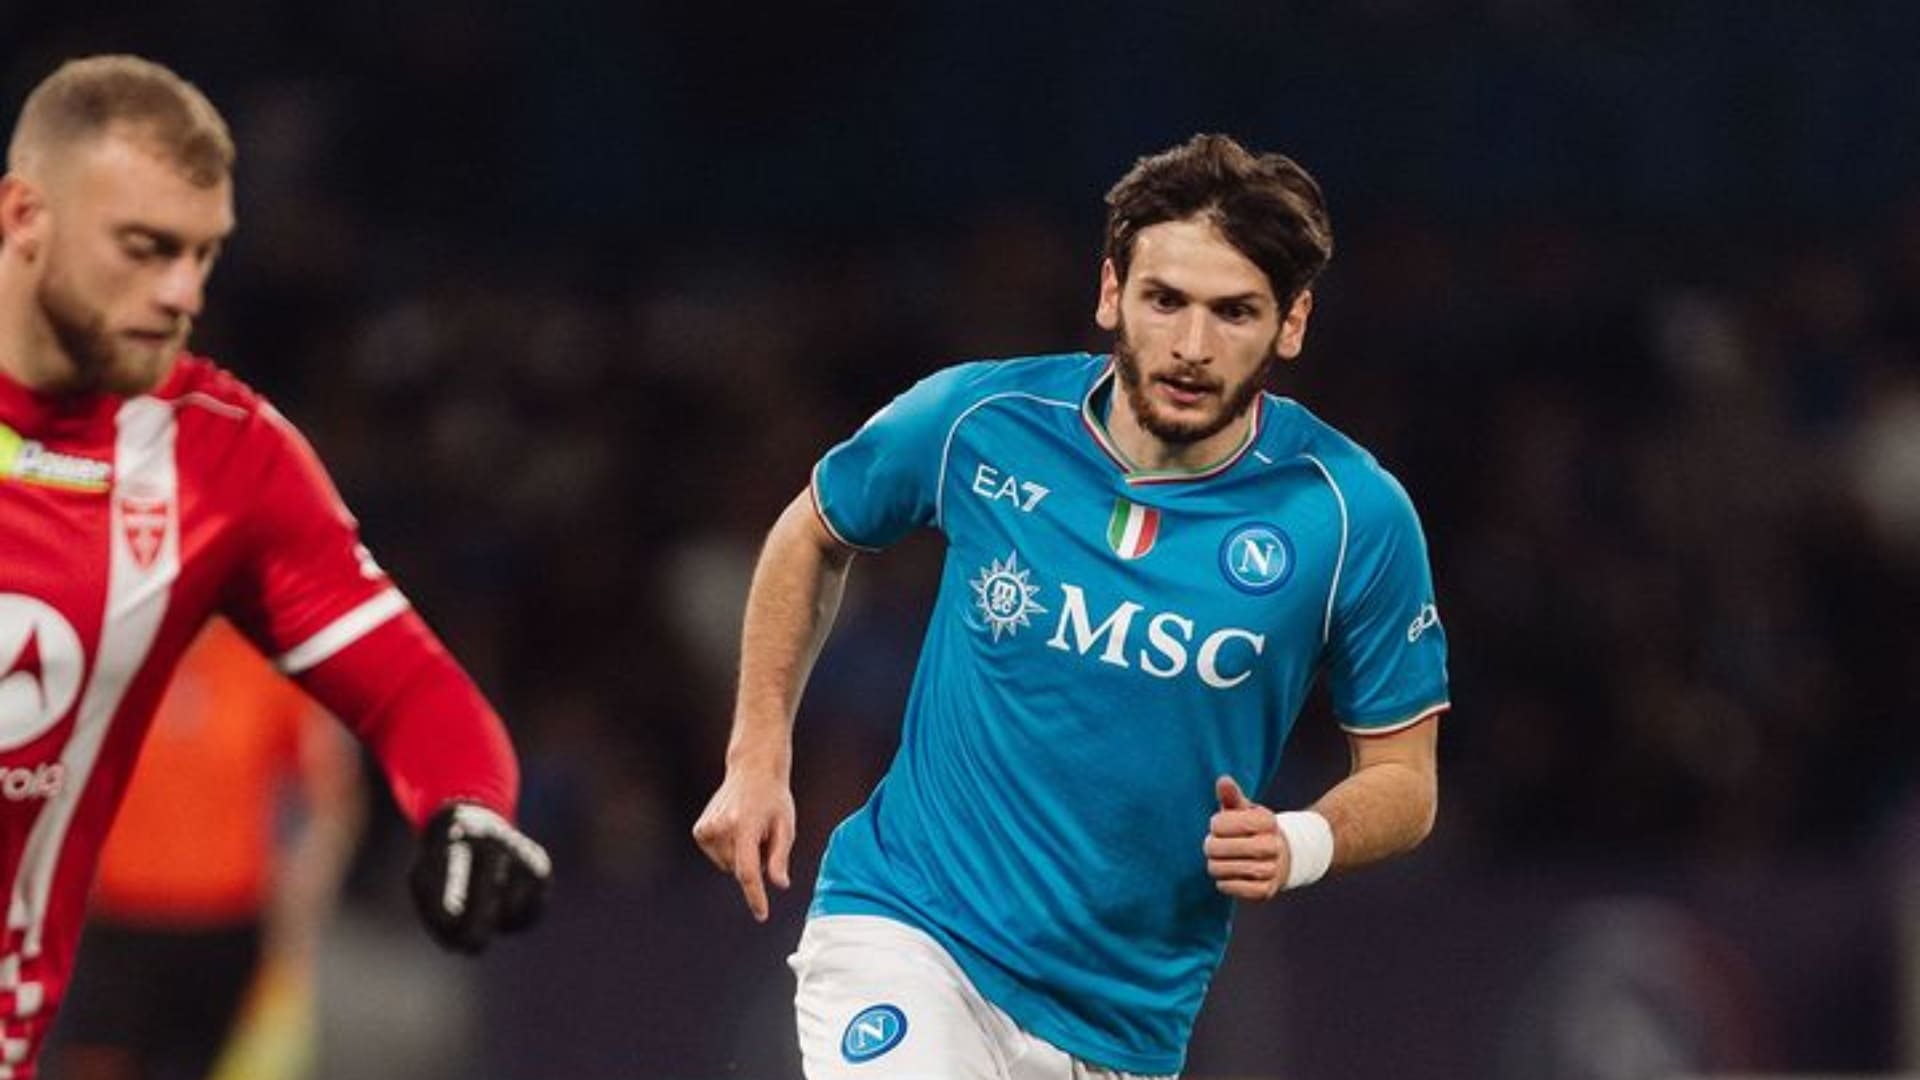 Napoli empata con Monza en la Serie A; Fiorentina sube al cuarto puesto